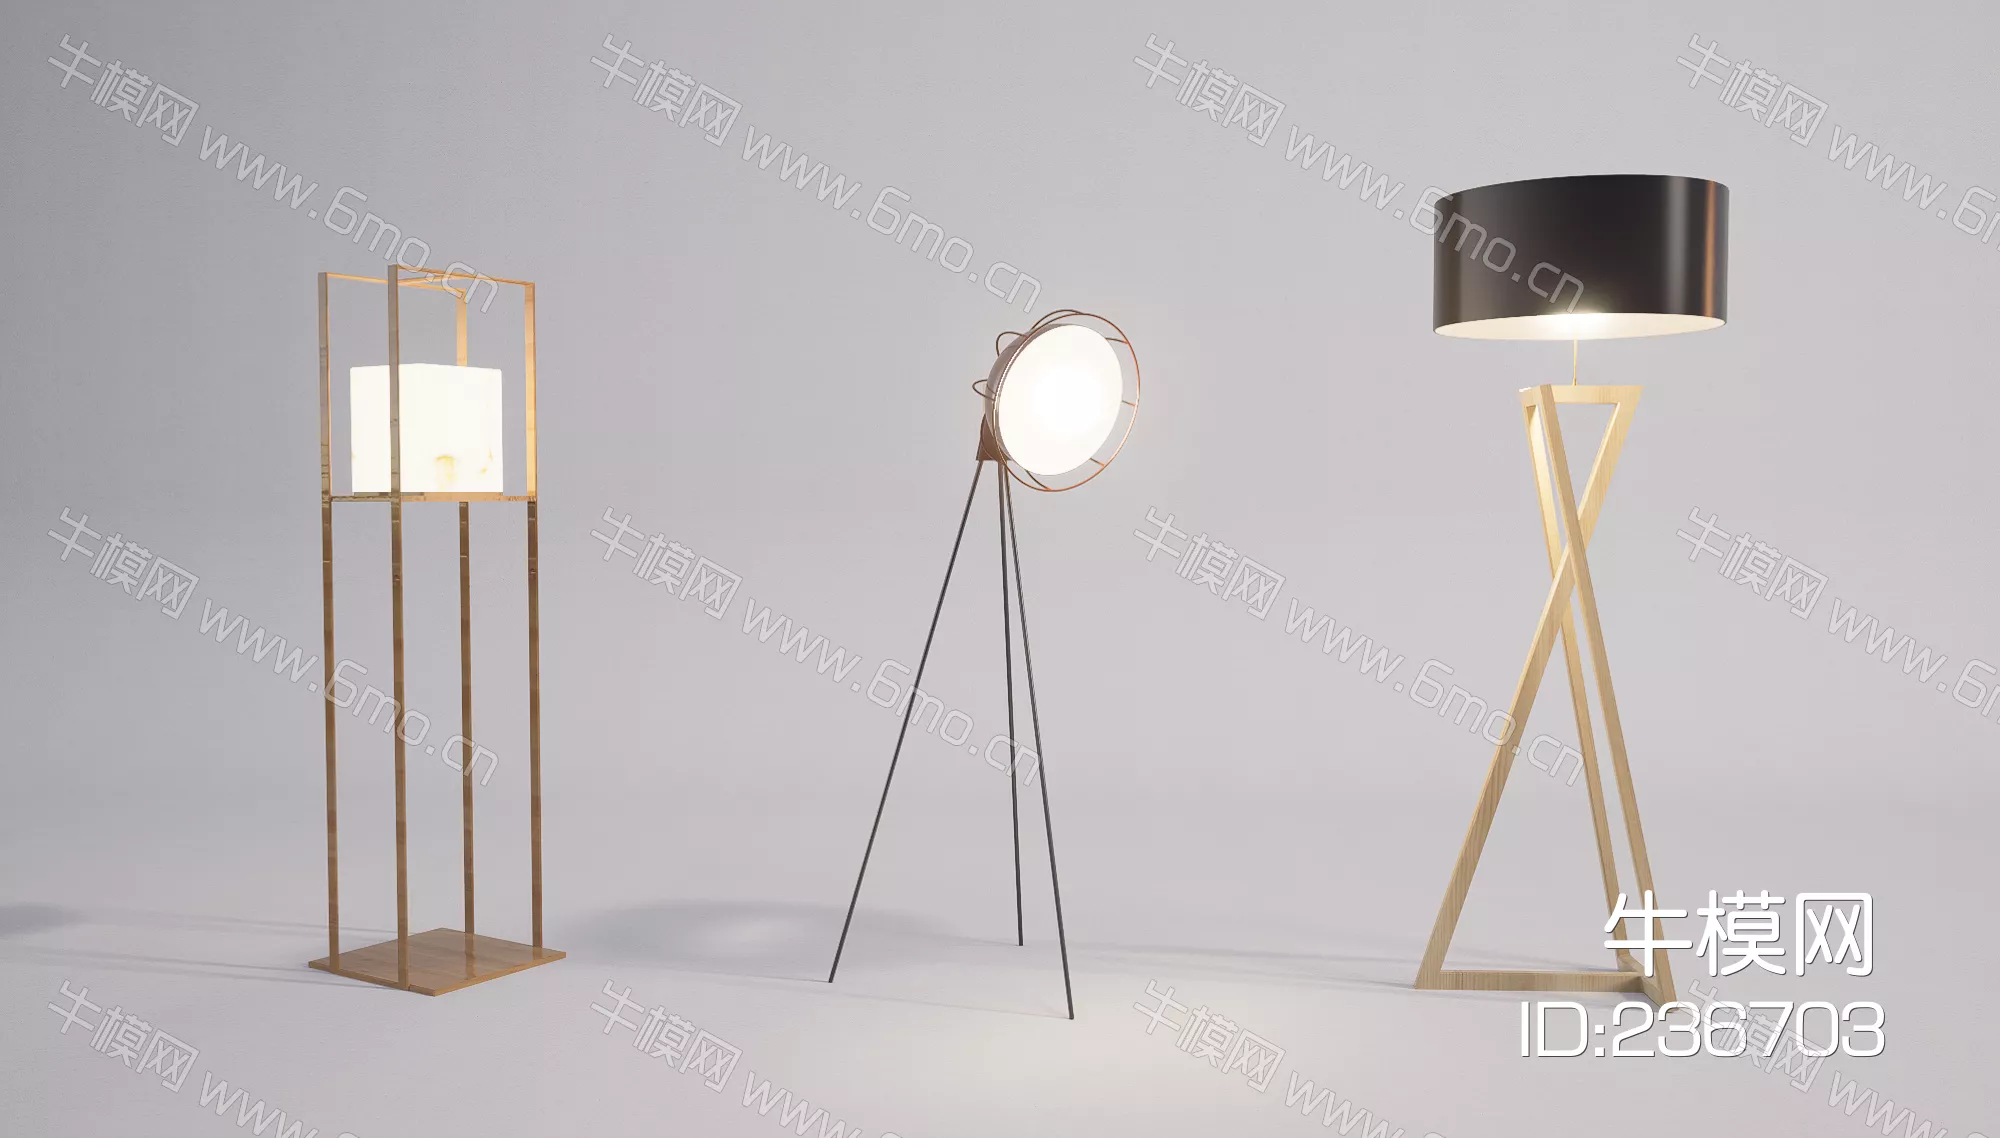 MODERN FLOOR LAMP - SKETCHUP 3D MODEL - ENSCAPE - 236703